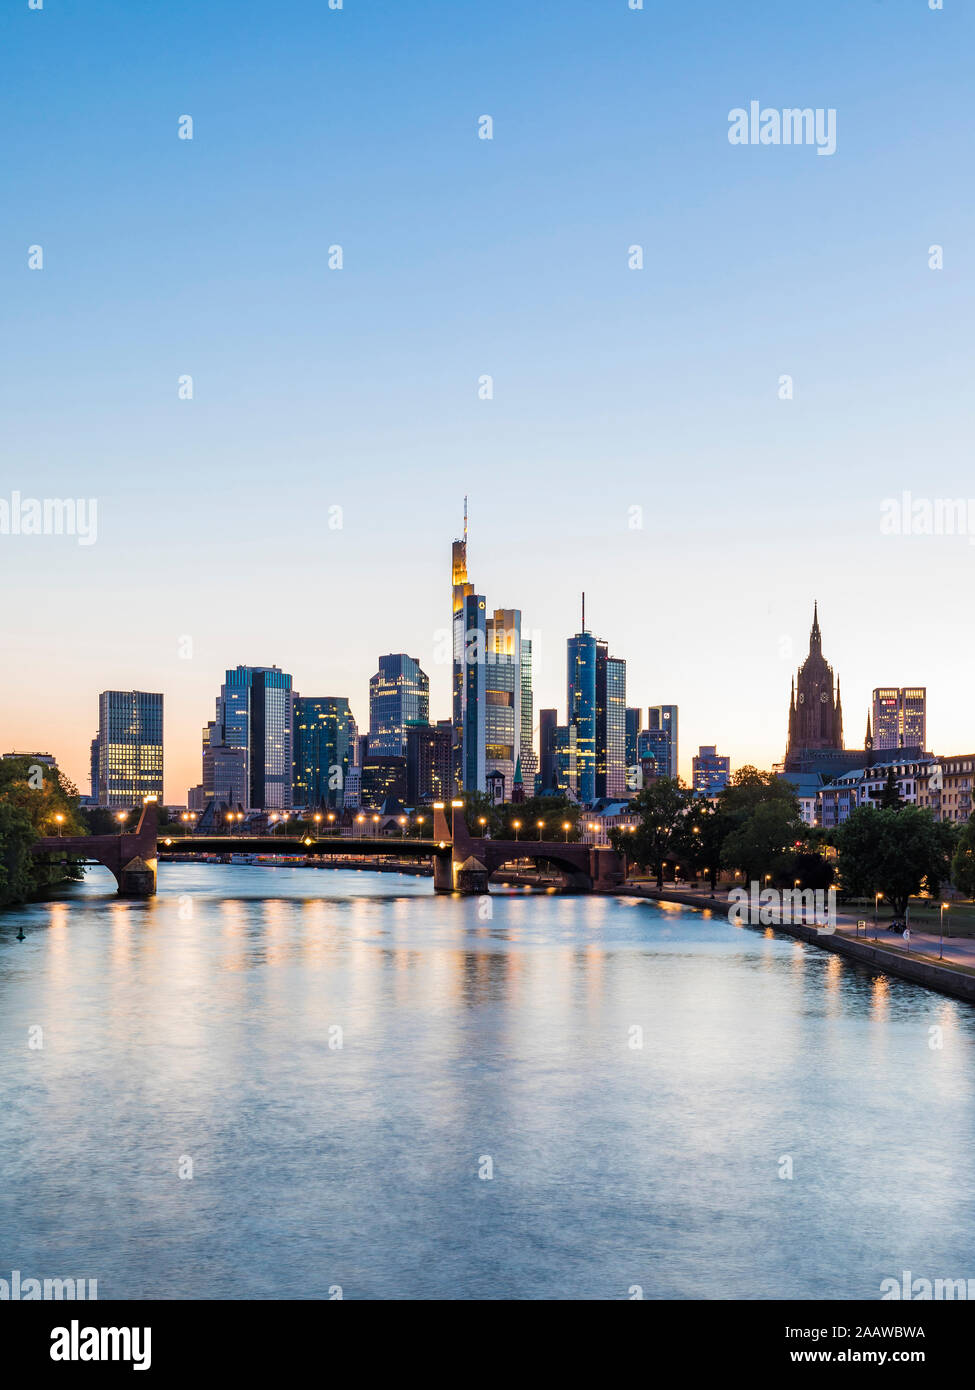 Vue panoramique de la rivière dans la ville illuminée contre ciel clair pendant le coucher du soleil à Frankfurt, Allemagne Banque D'Images